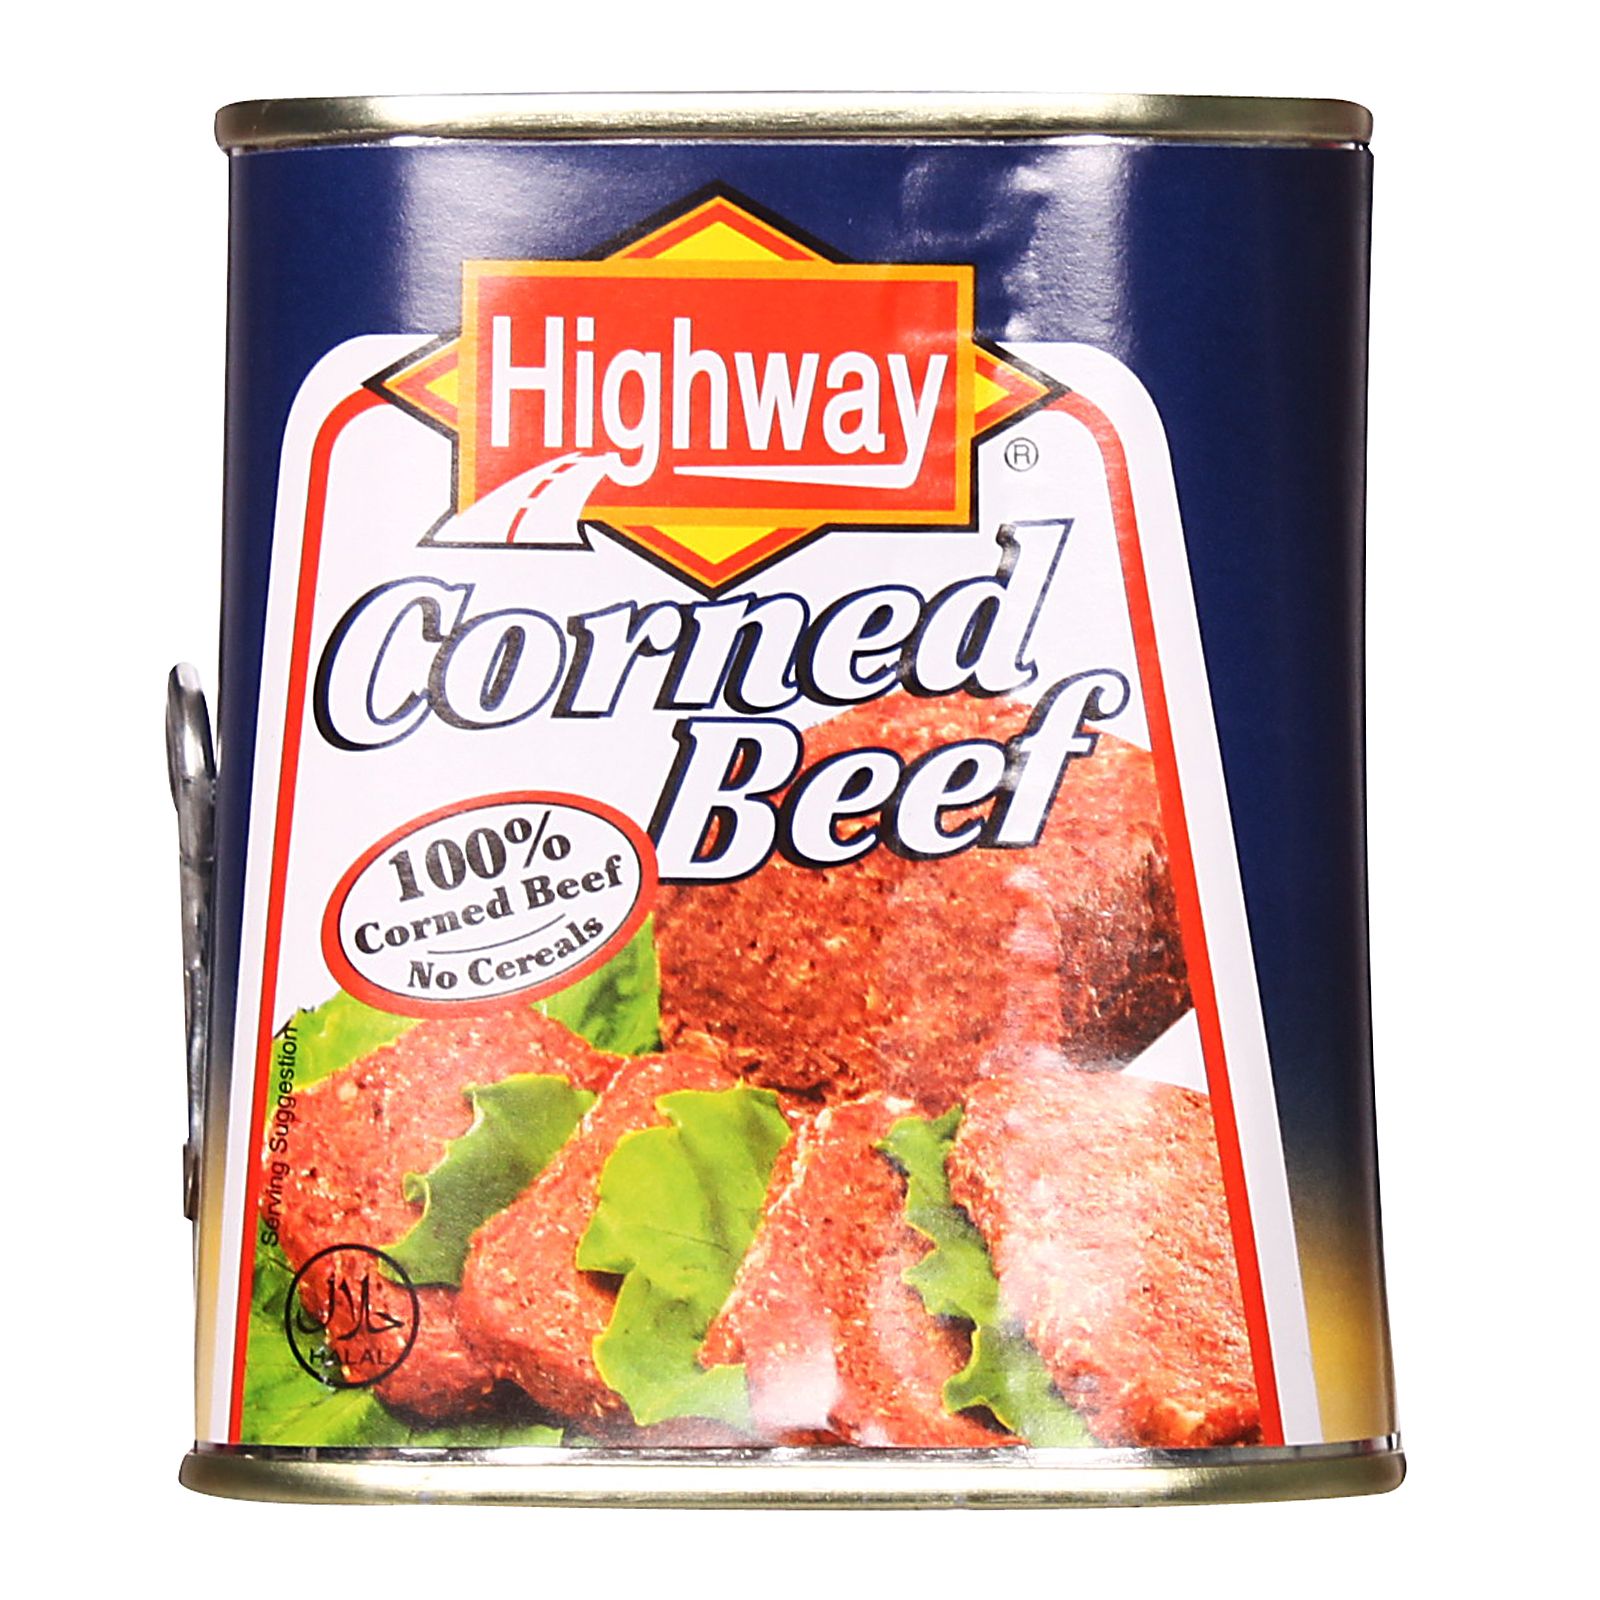 Highway Corned Beef 340g